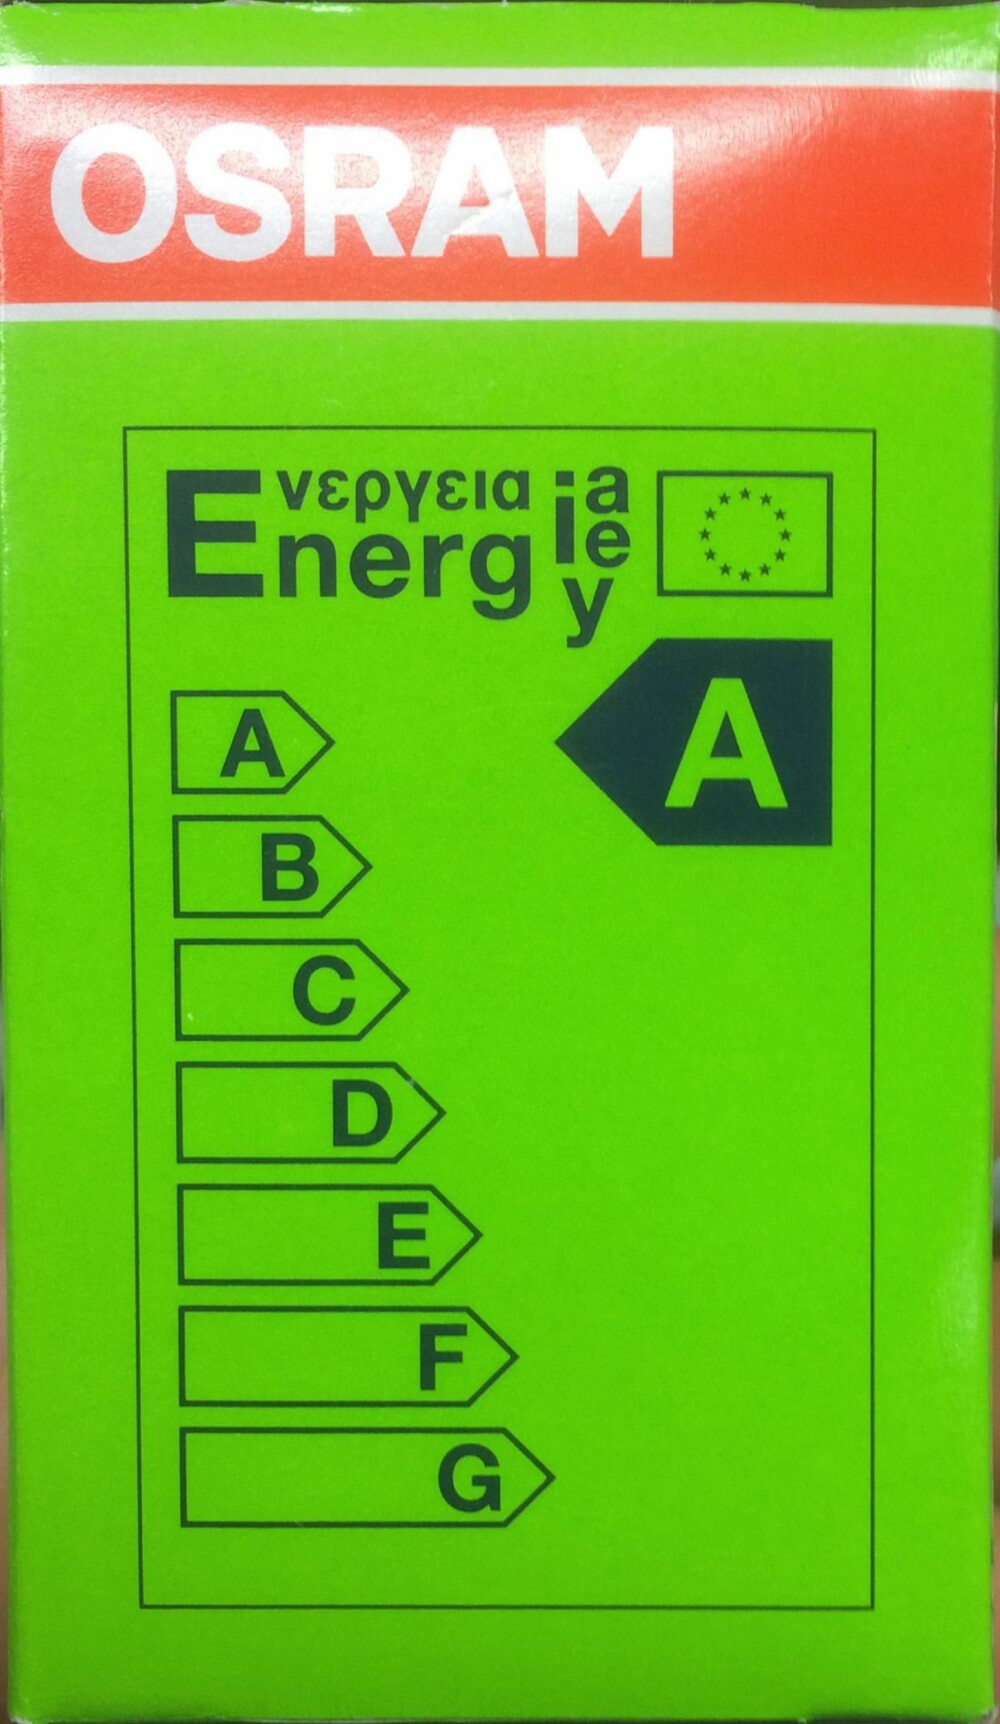 ENERGIMERKING: En A forteller at pæren er meget energieffektiv. (FOTO: Alexander Berg jr.) 